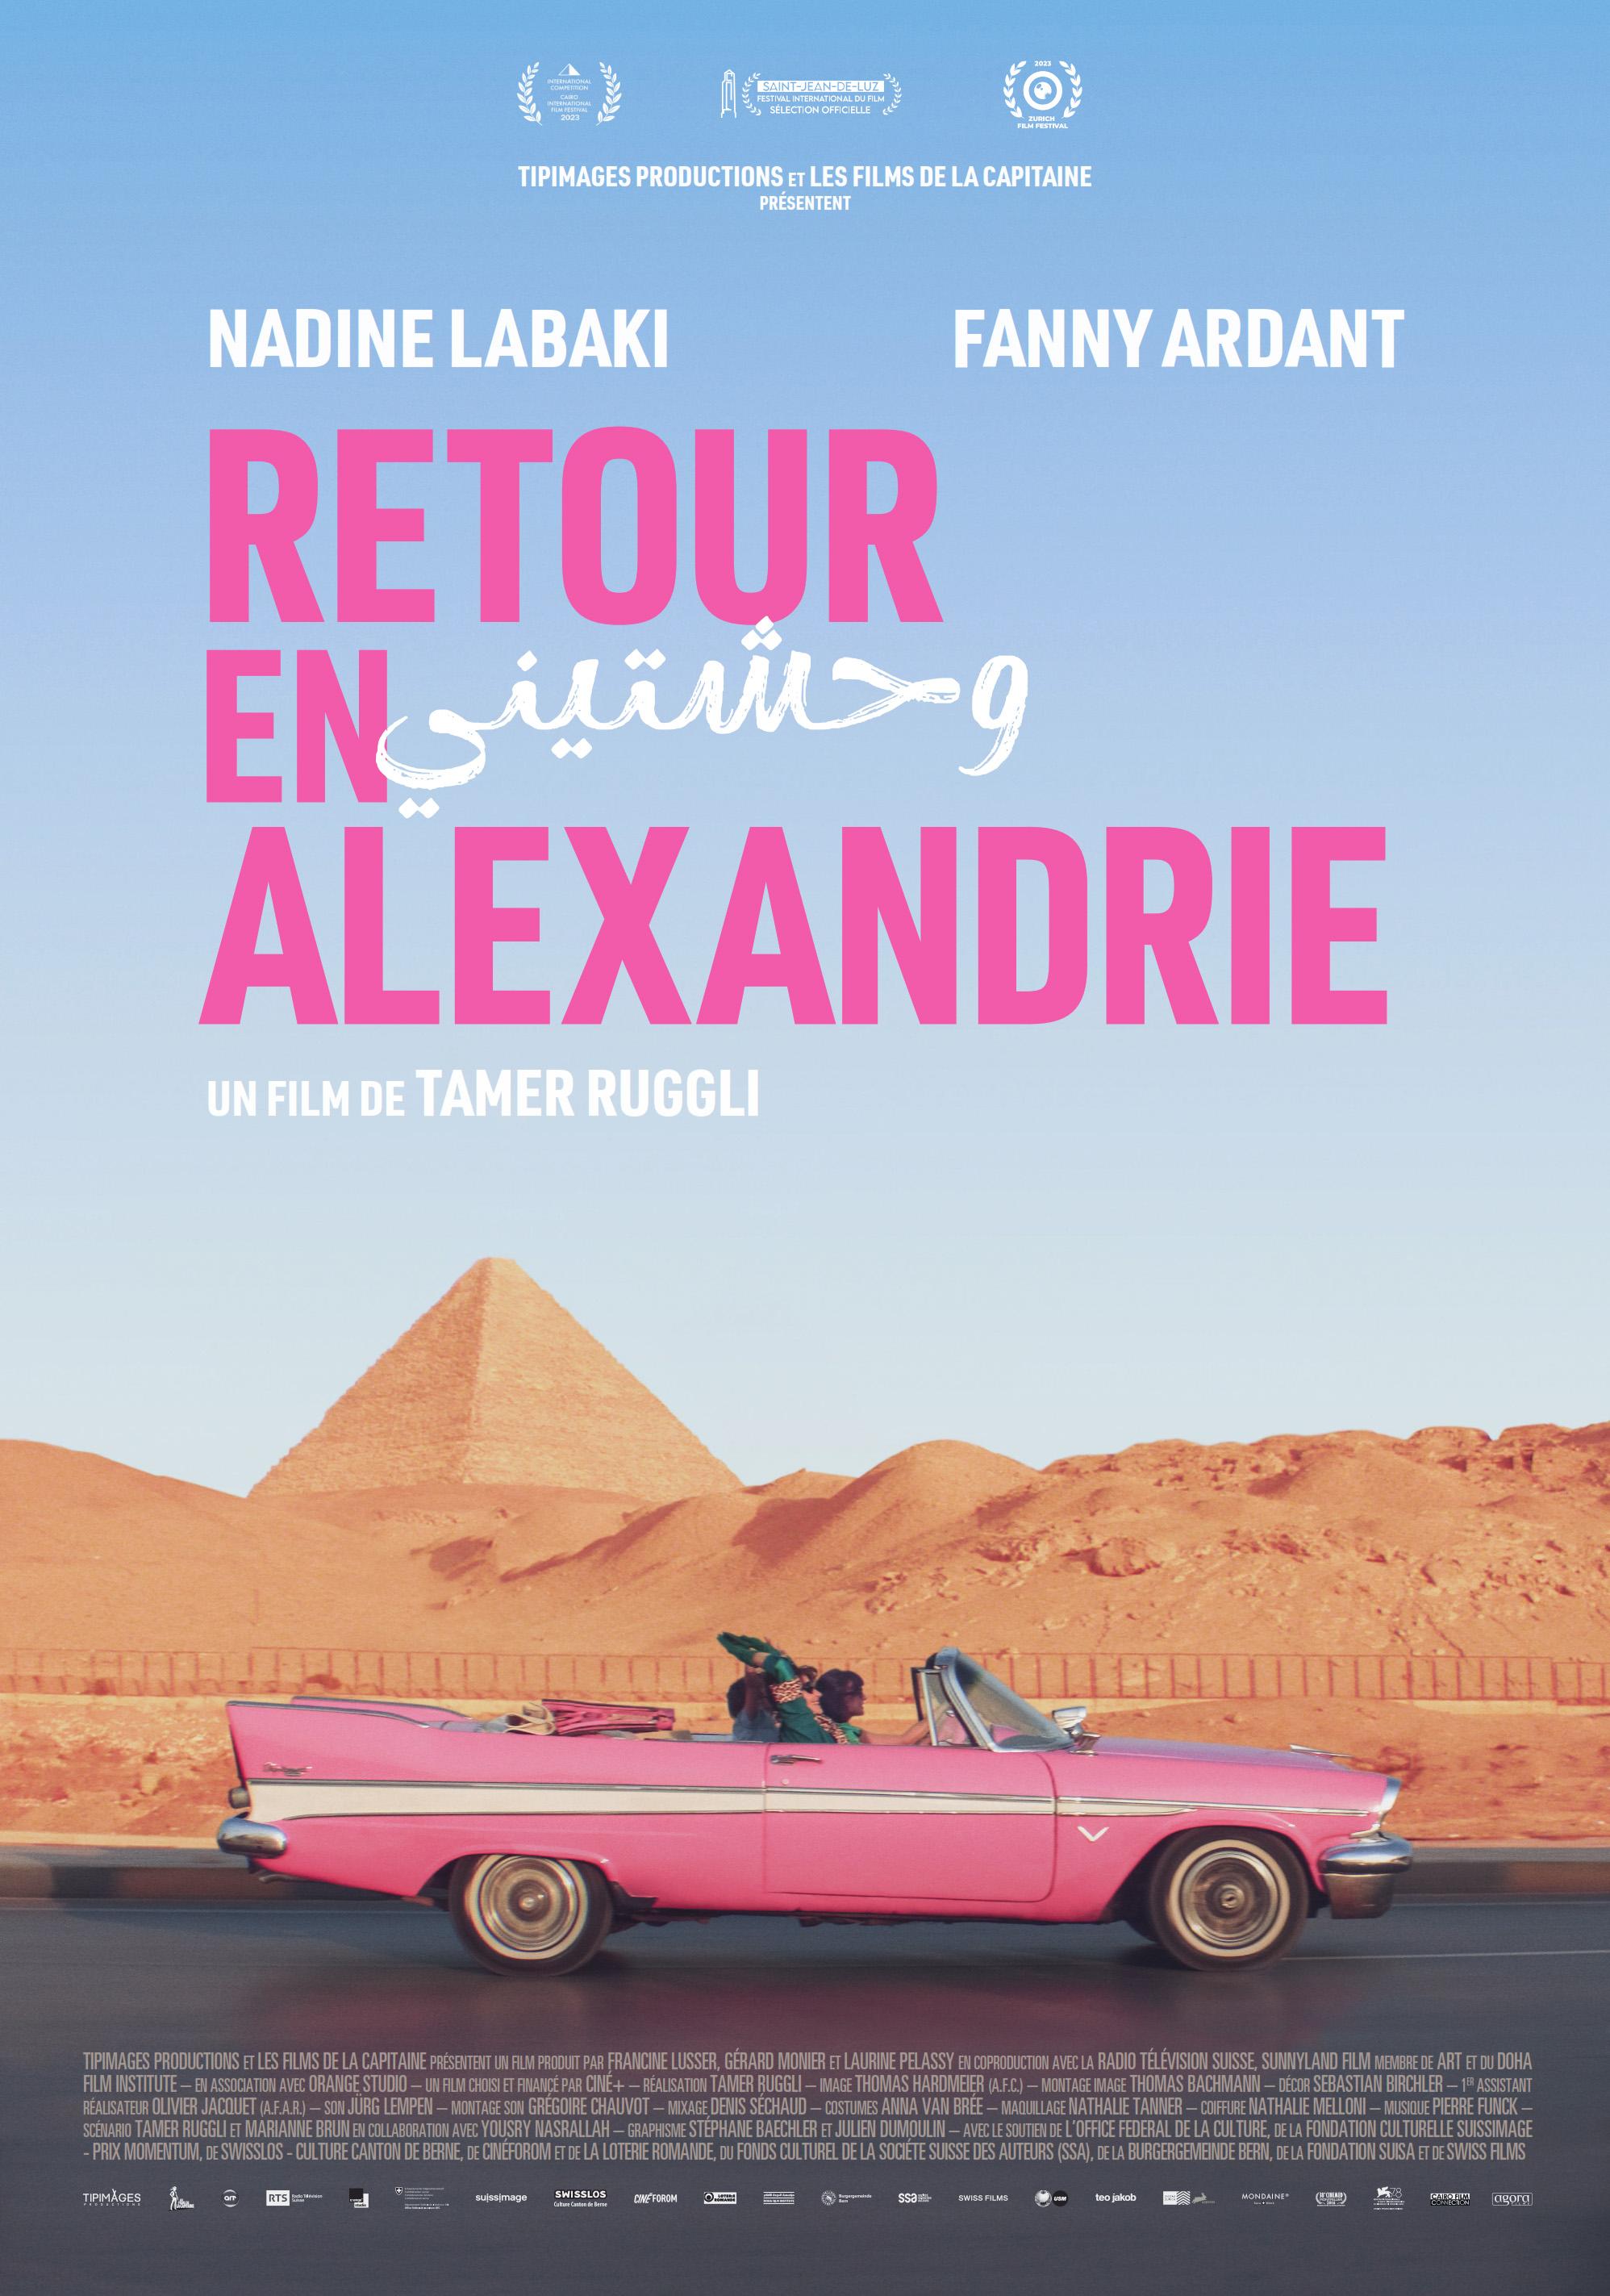 L'affiche de "Retour en Alexandrie", un film de Tamer Ruggli. [RTS - Tip'images Productions / Les Films de la Capitaine]